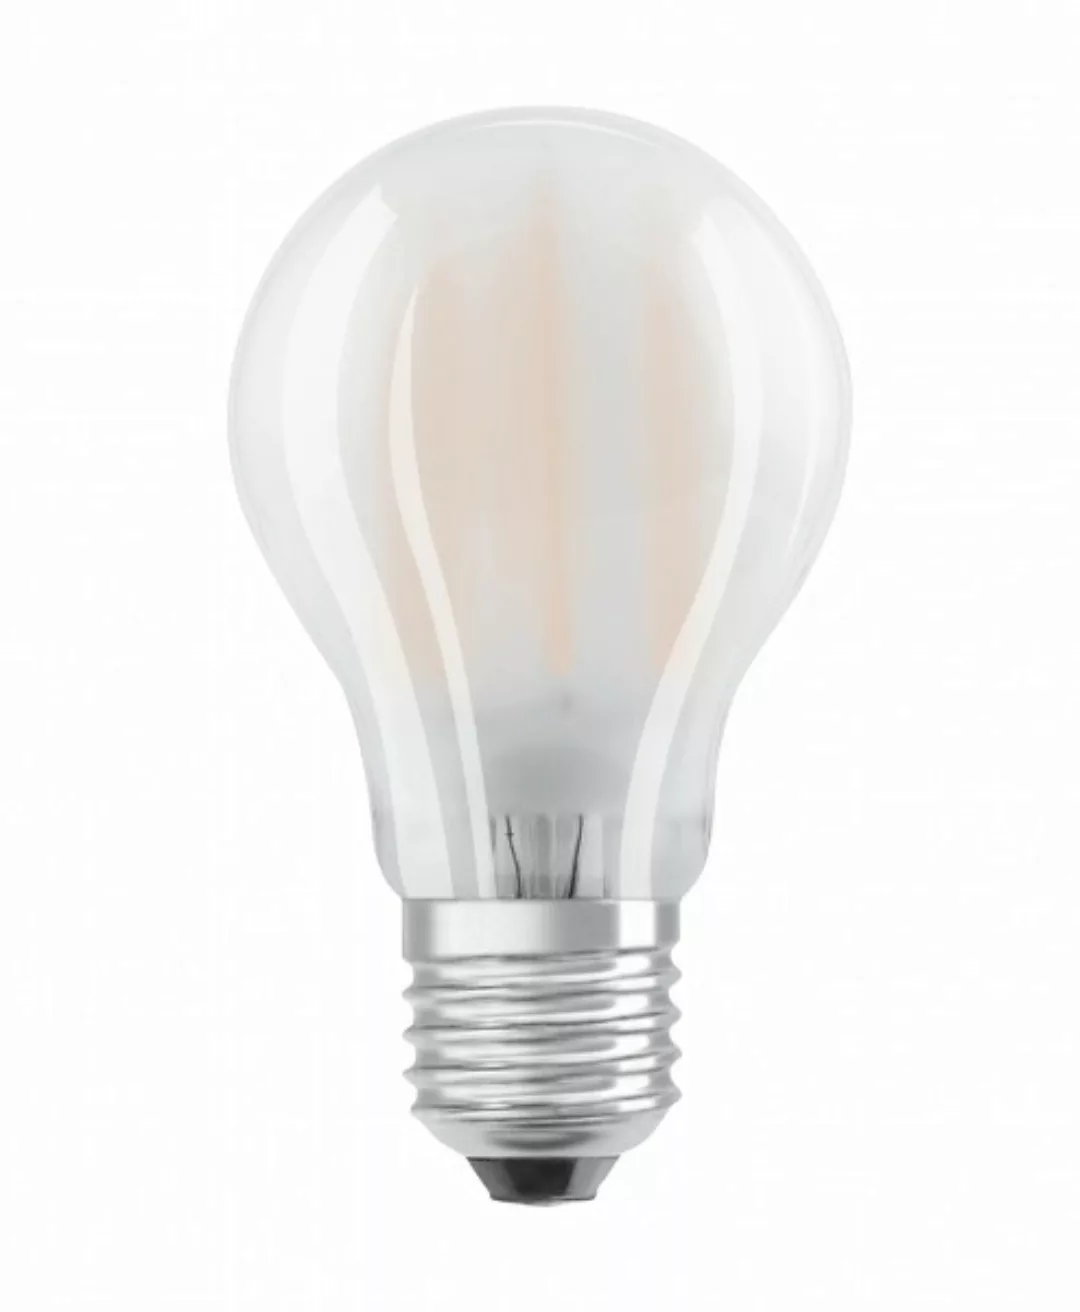 OSRAM LED STAR CLASSIC A 100 BLI Kaltweiß Filament Matt E27 Glühlampe günstig online kaufen